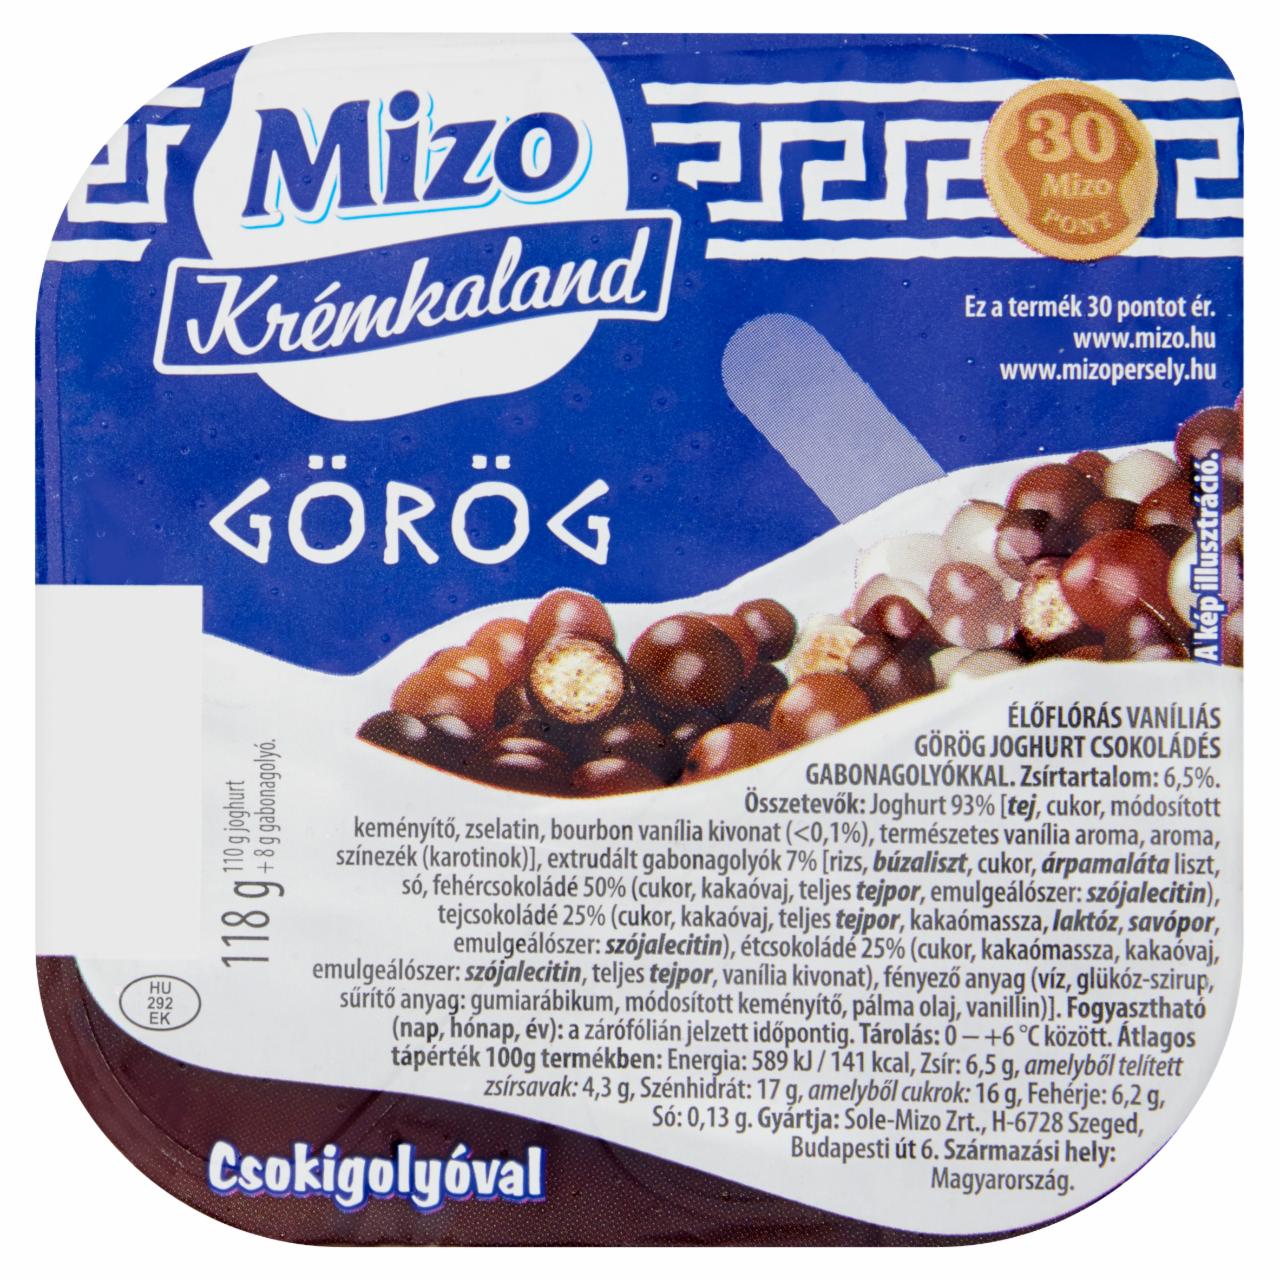 Képek - Mizo Krémkaland vaníliás görög joghurt csokigolyóval 118 g